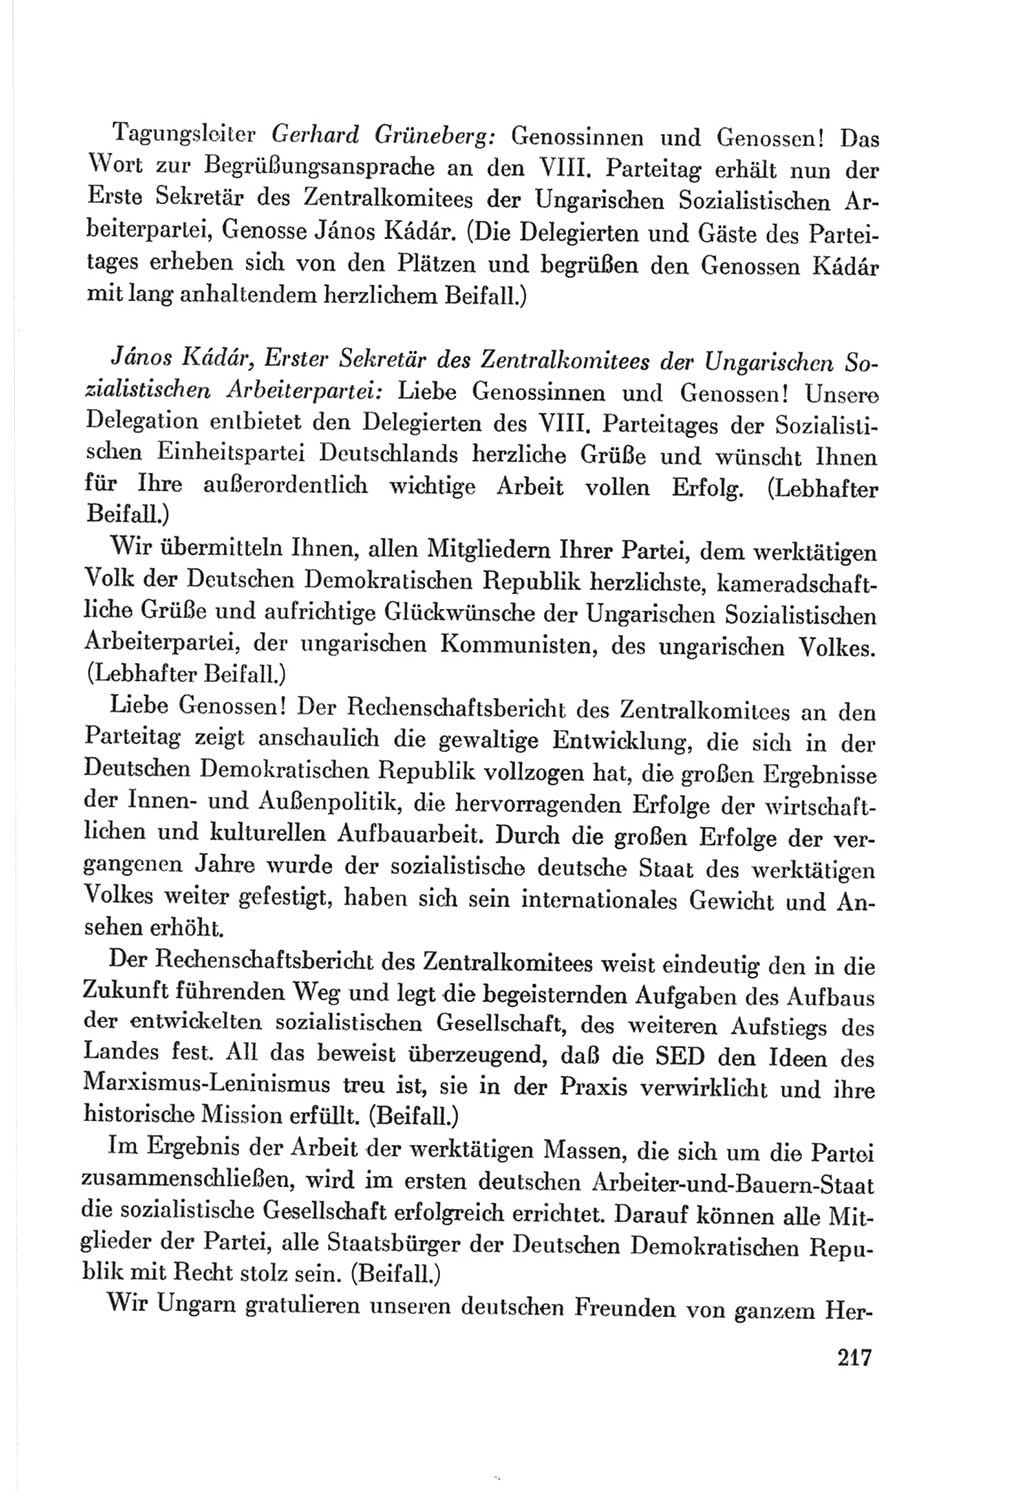 Protokoll der Verhandlungen des Ⅷ. Parteitages der Sozialistischen Einheitspartei Deutschlands (SED) [Deutsche Demokratische Republik (DDR)] 1971, Band 1, Seite 217 (Prot. Verh. Ⅷ. PT SED DDR 1971, Bd. 1, S. 217)